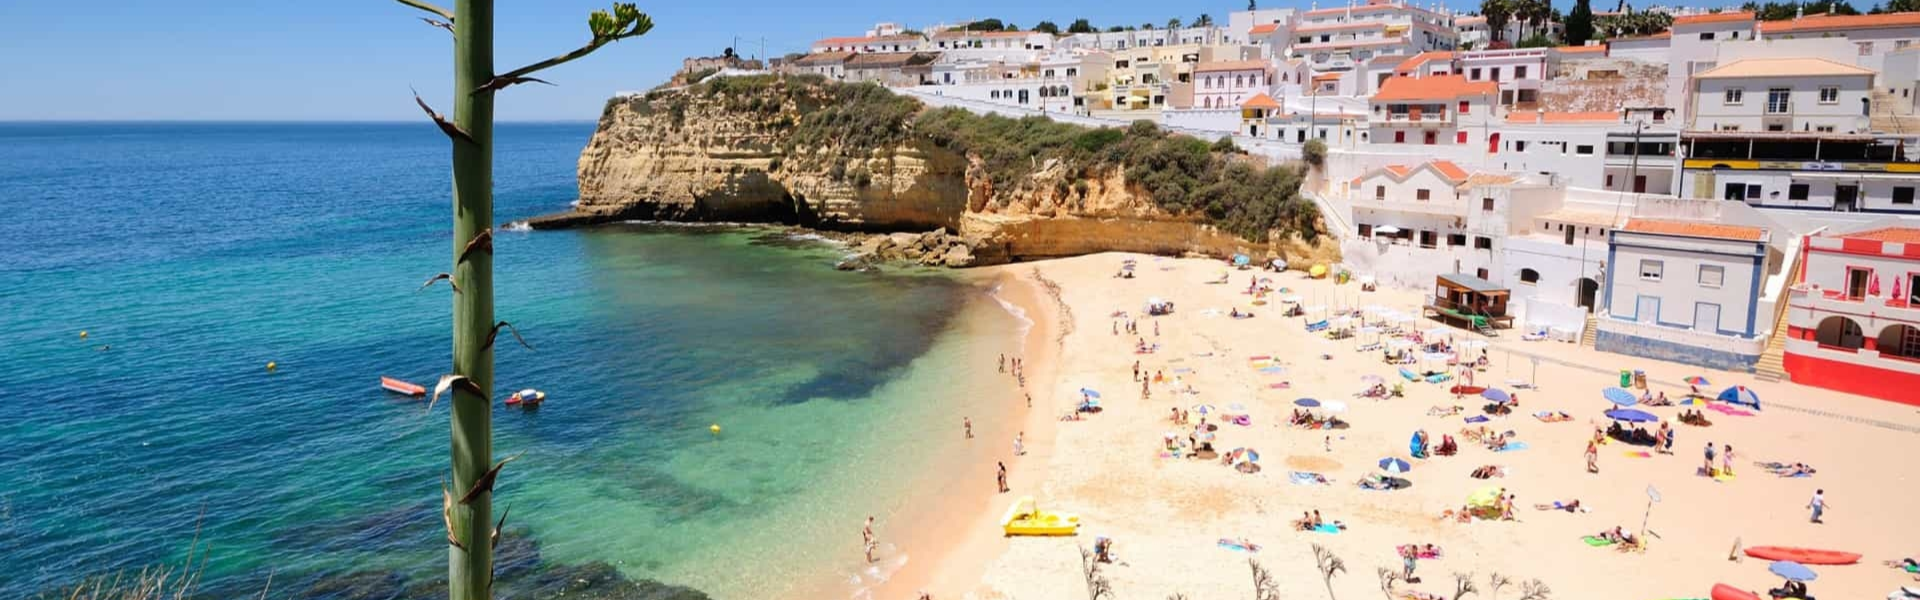 Immobilien, Verkauf, Verkauf, Verkauf Tipps kaufen Tipps, Algarve, beste Preise